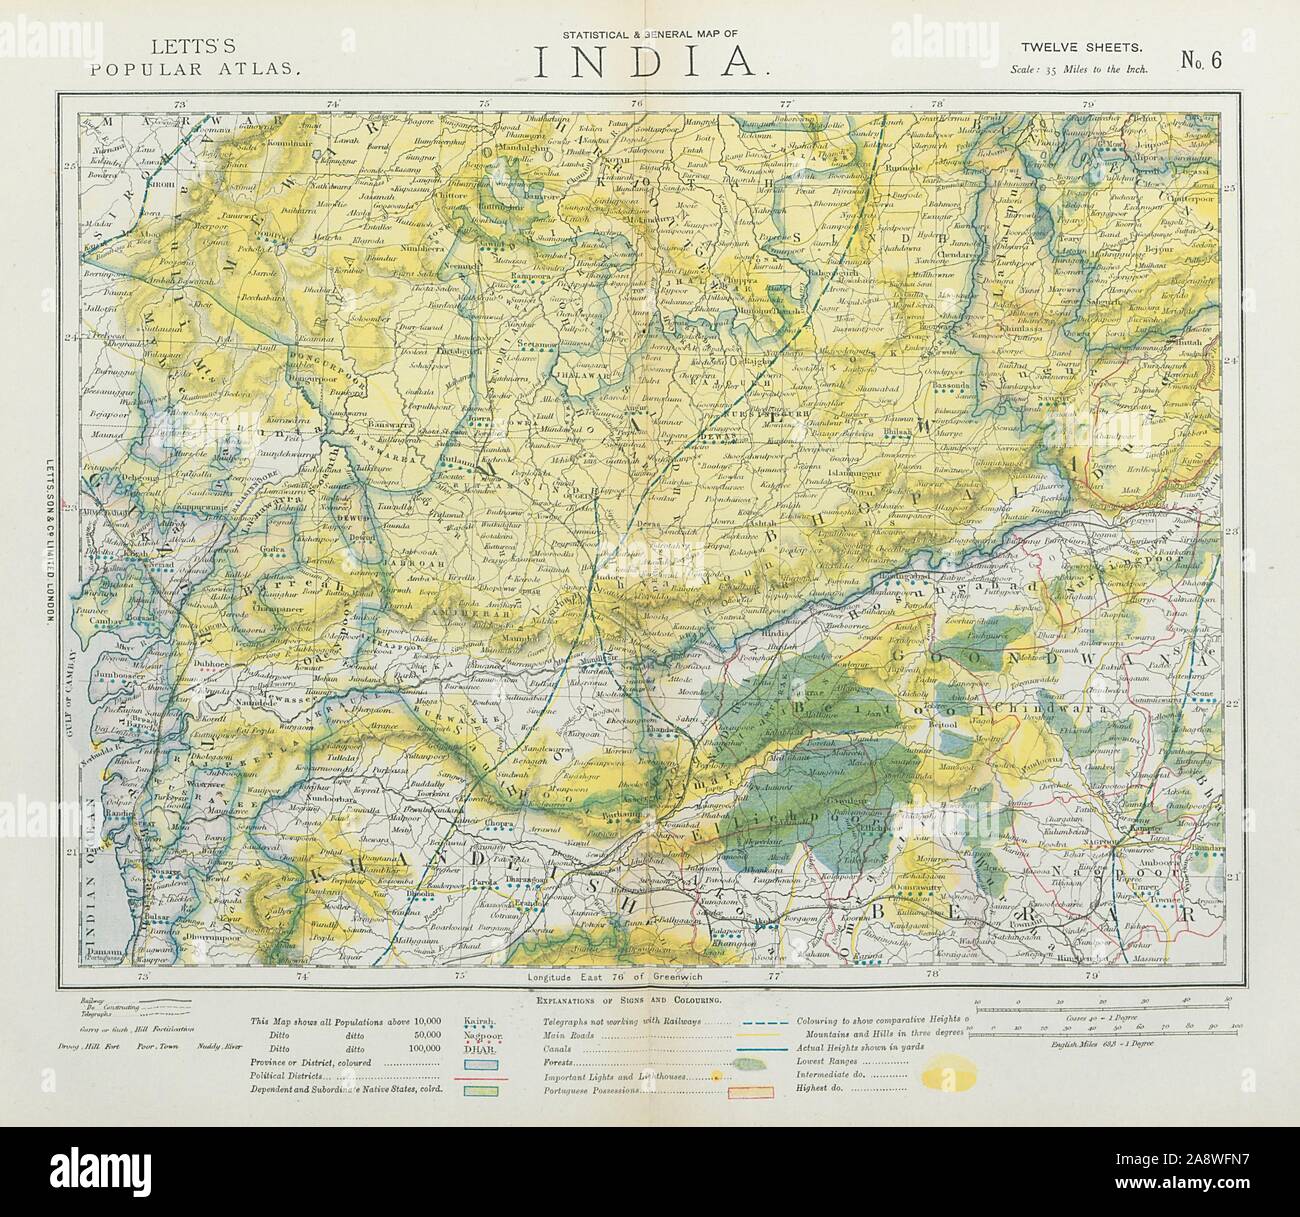 WEST BRITISH INDIA. Malwa Khandeish Berar Goondwana Bhopal. Railways 1883 map Stock Photo